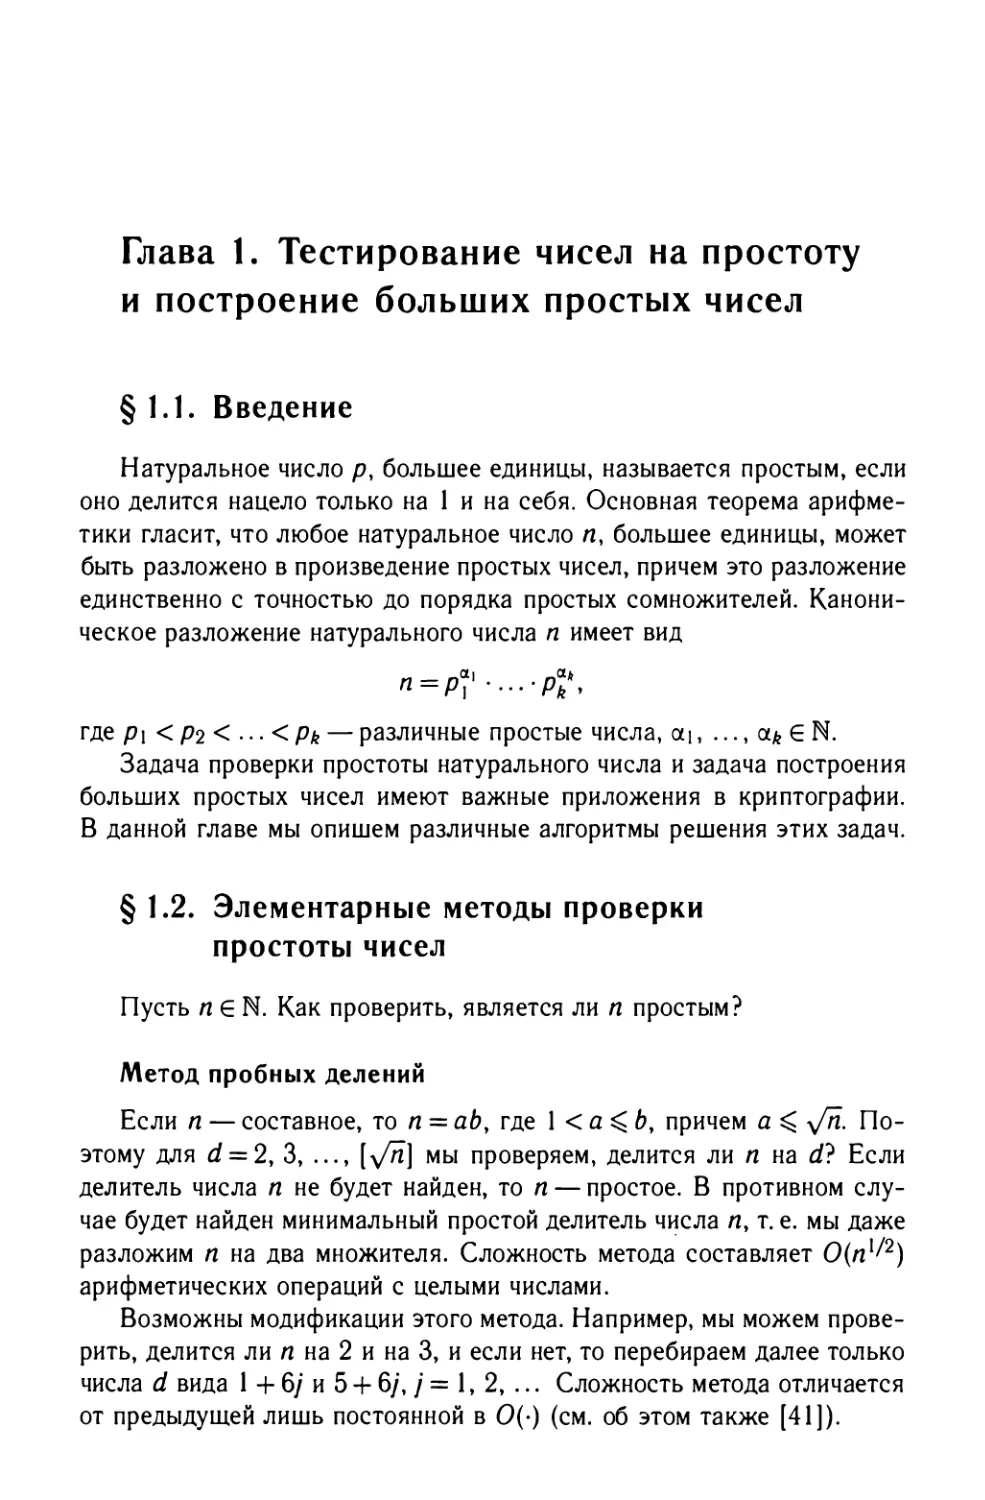 Глава 1. Тестирование чисел на простоту и построение больших простых чисел
§1.2. Элементарные методы проверки простоты чисел